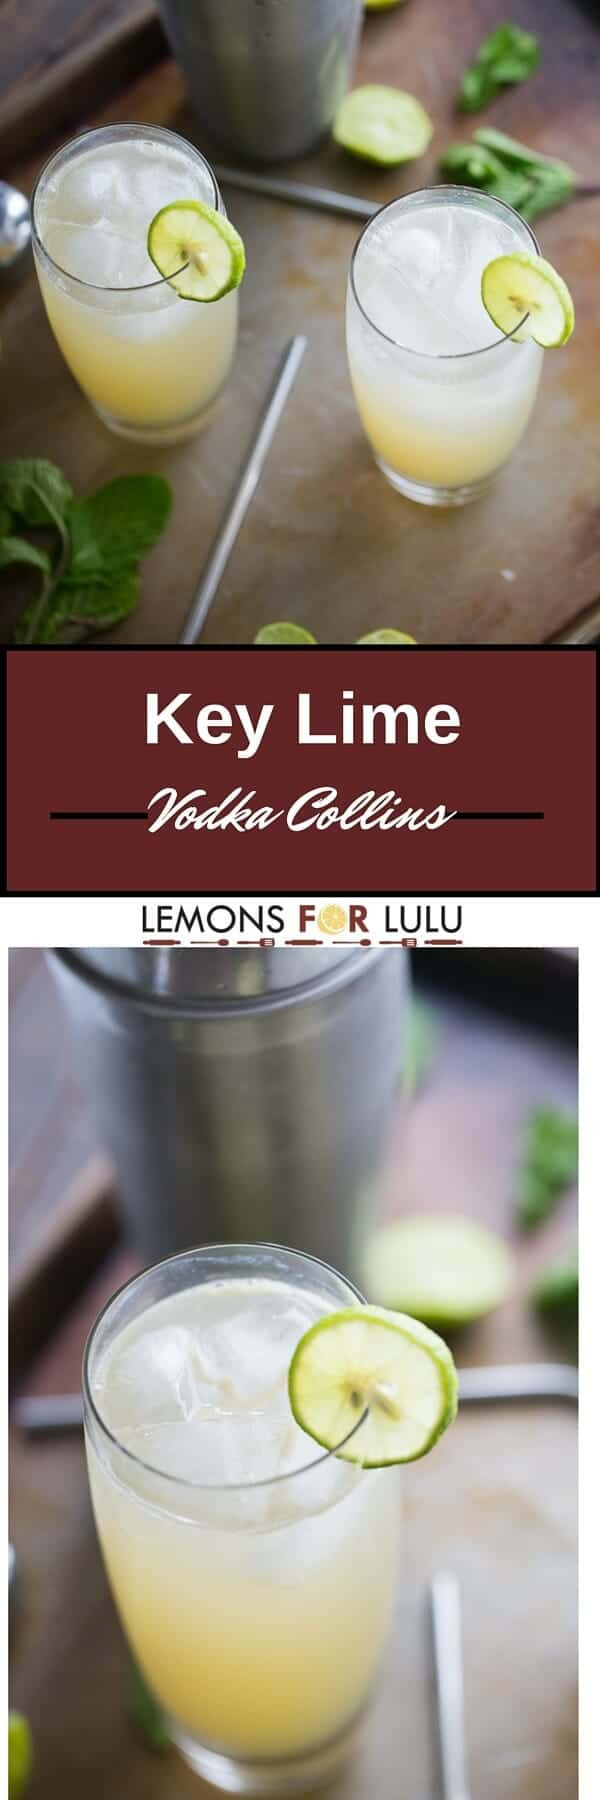 Vodka Collins Drinks
 Key Lime Vodka Collins LemonsforLulu